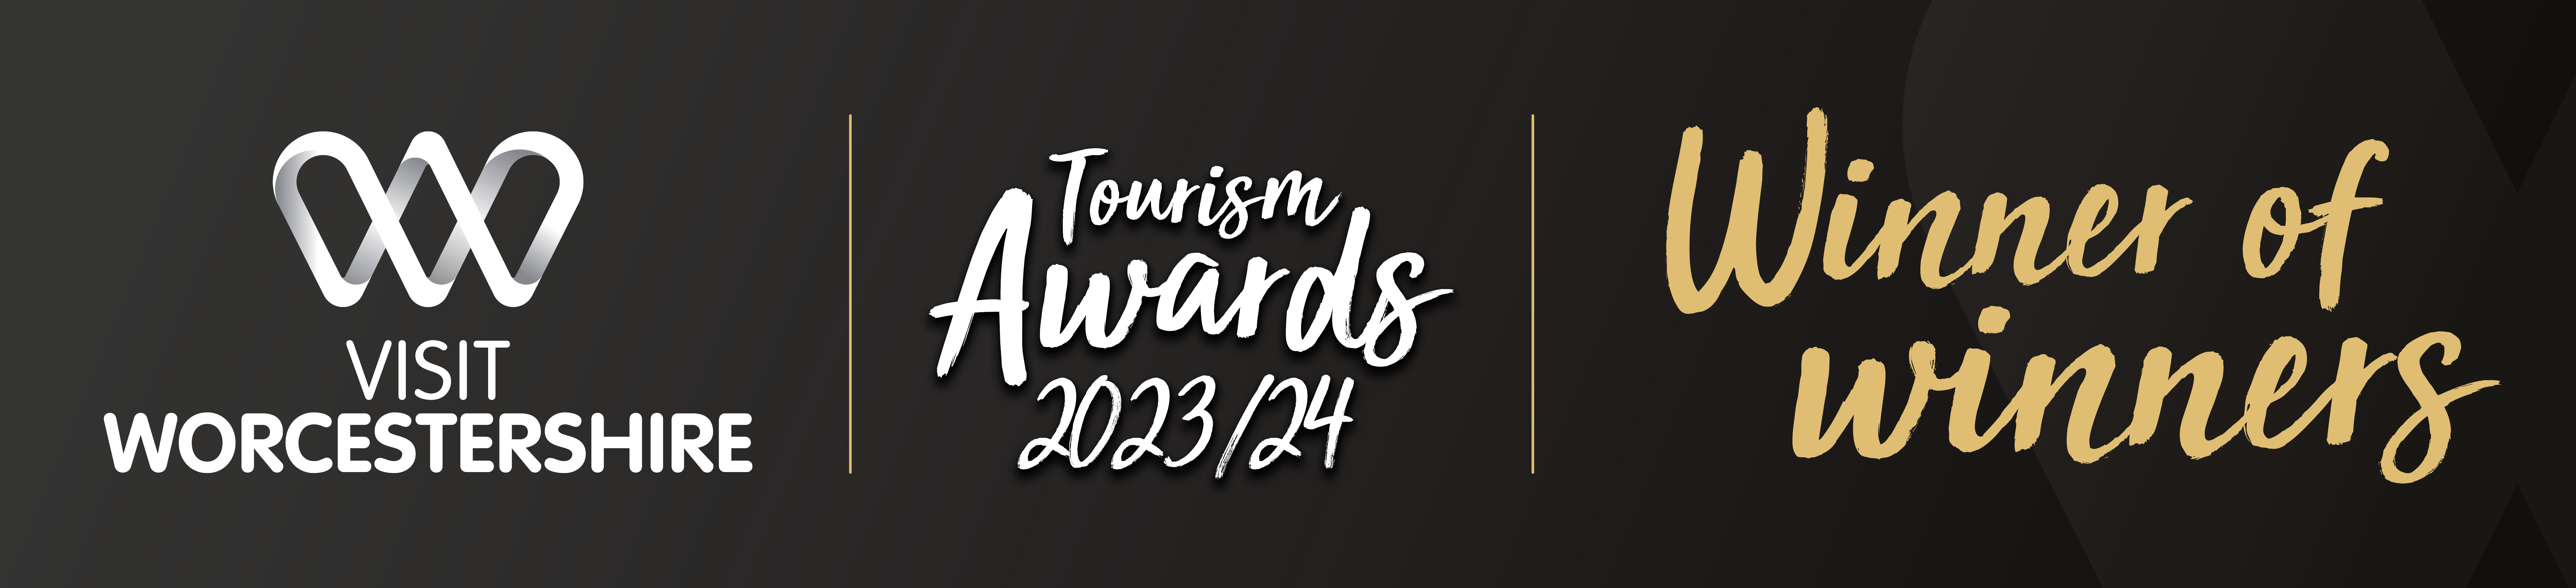 VW Tourism Awards Winners 2023-24 Winner of Winners (2)